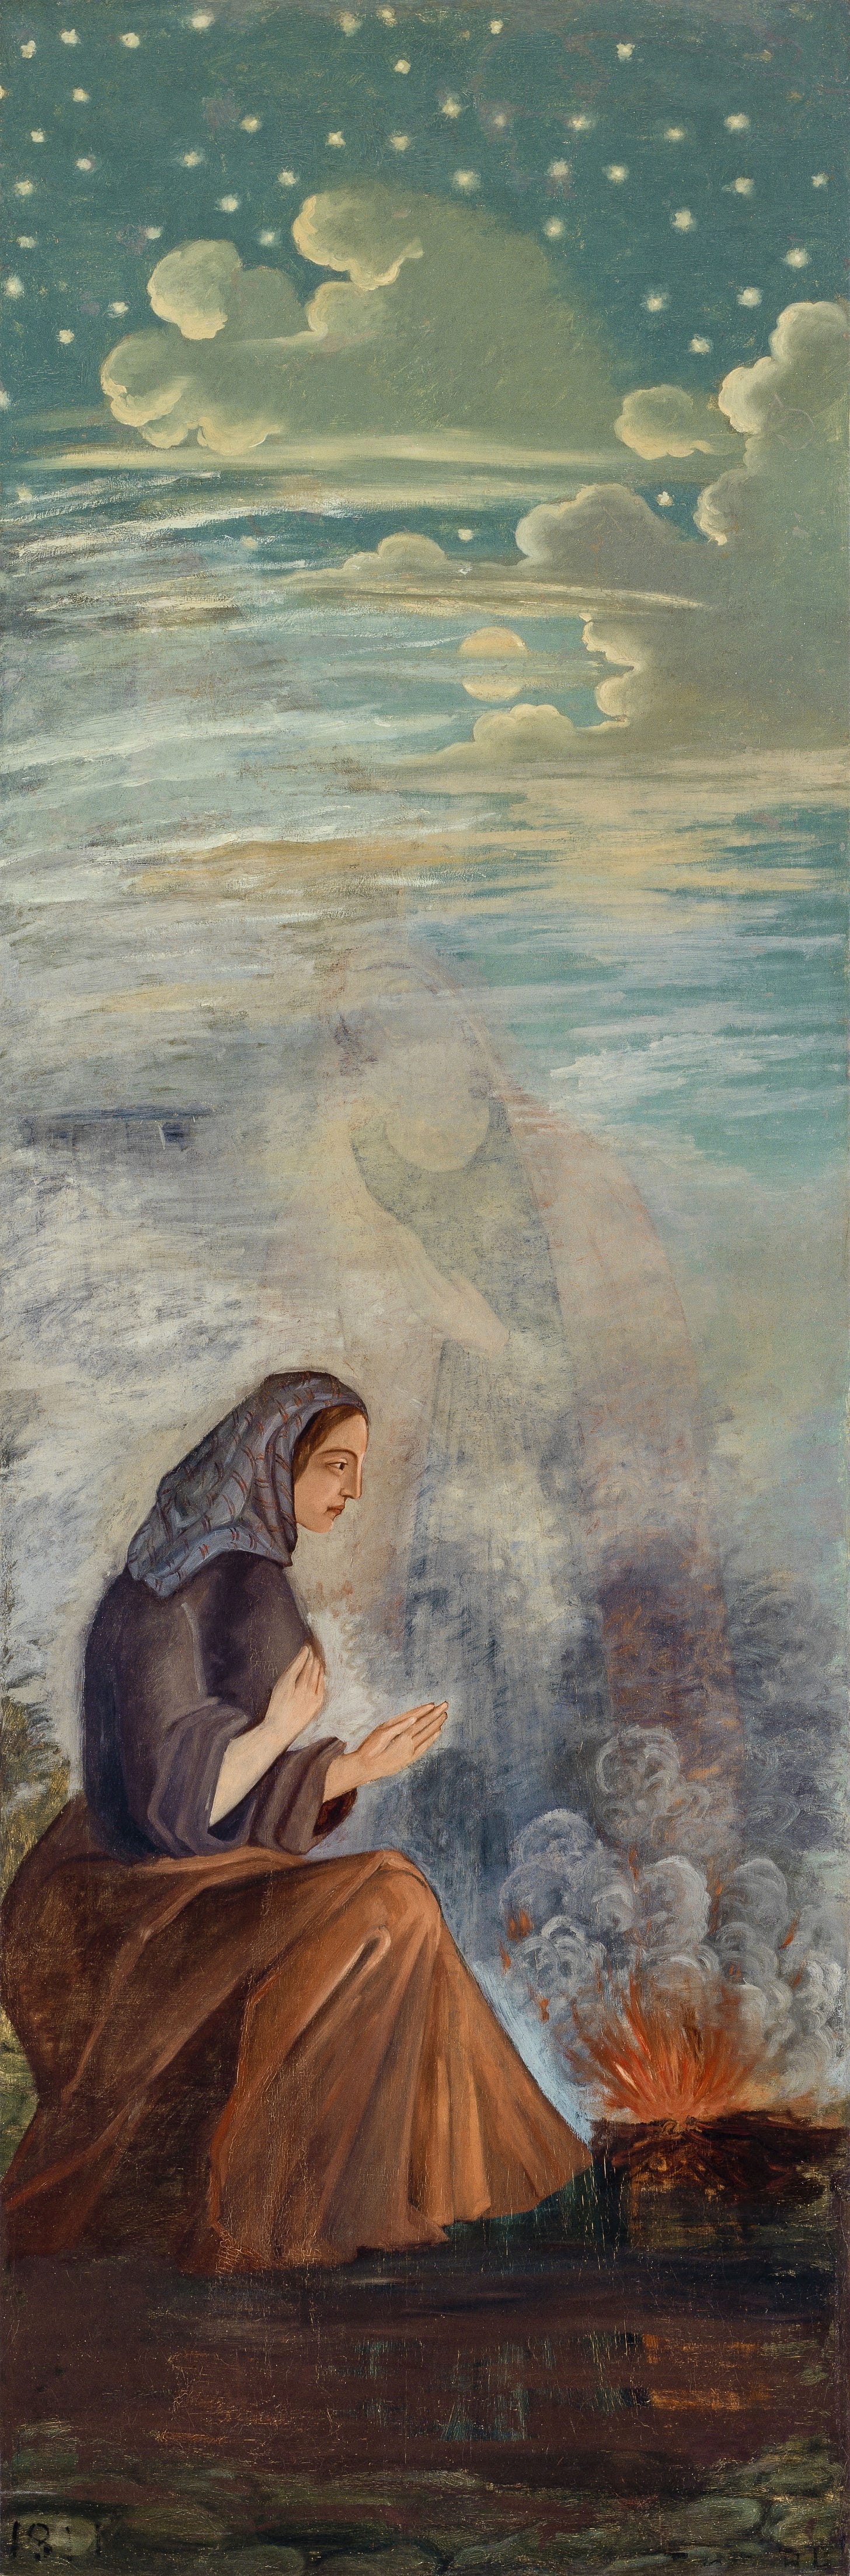 Les quatre saisons – L’hiver (1860) by Paul Cézanne